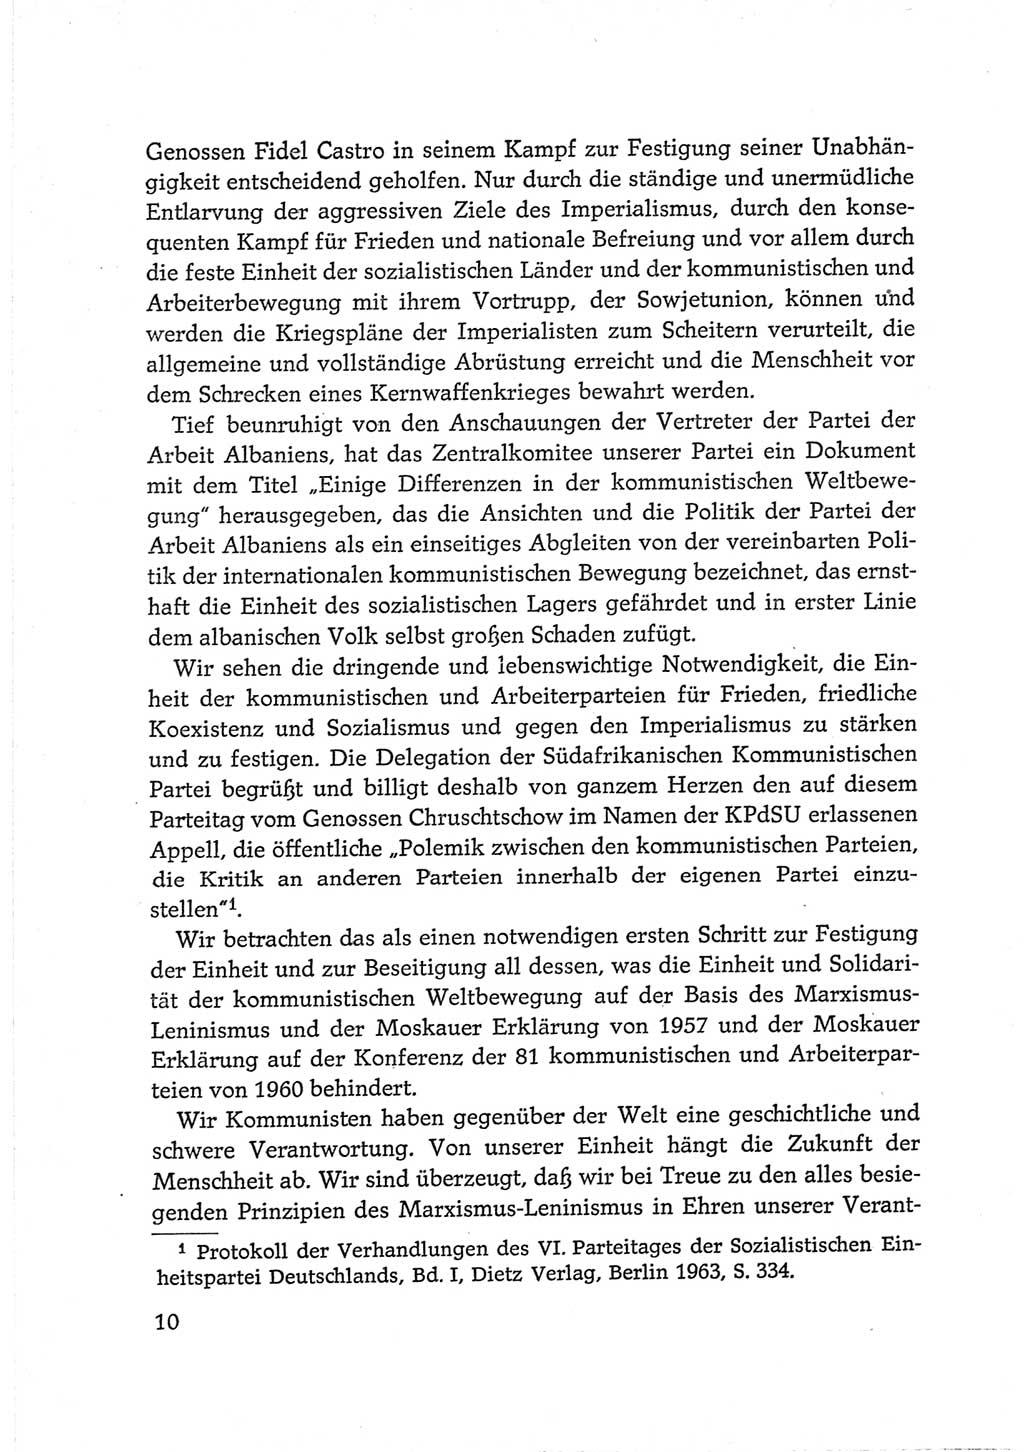 Protokoll der Verhandlungen des Ⅵ. Parteitages der Sozialistischen Einheitspartei Deutschlands (SED) [Deutsche Demokratische Republik (DDR)] 1963, Band Ⅲ, Seite 10 (Prot. Verh. Ⅵ. PT SED DDR 1963, Bd. Ⅲ, S. 10)